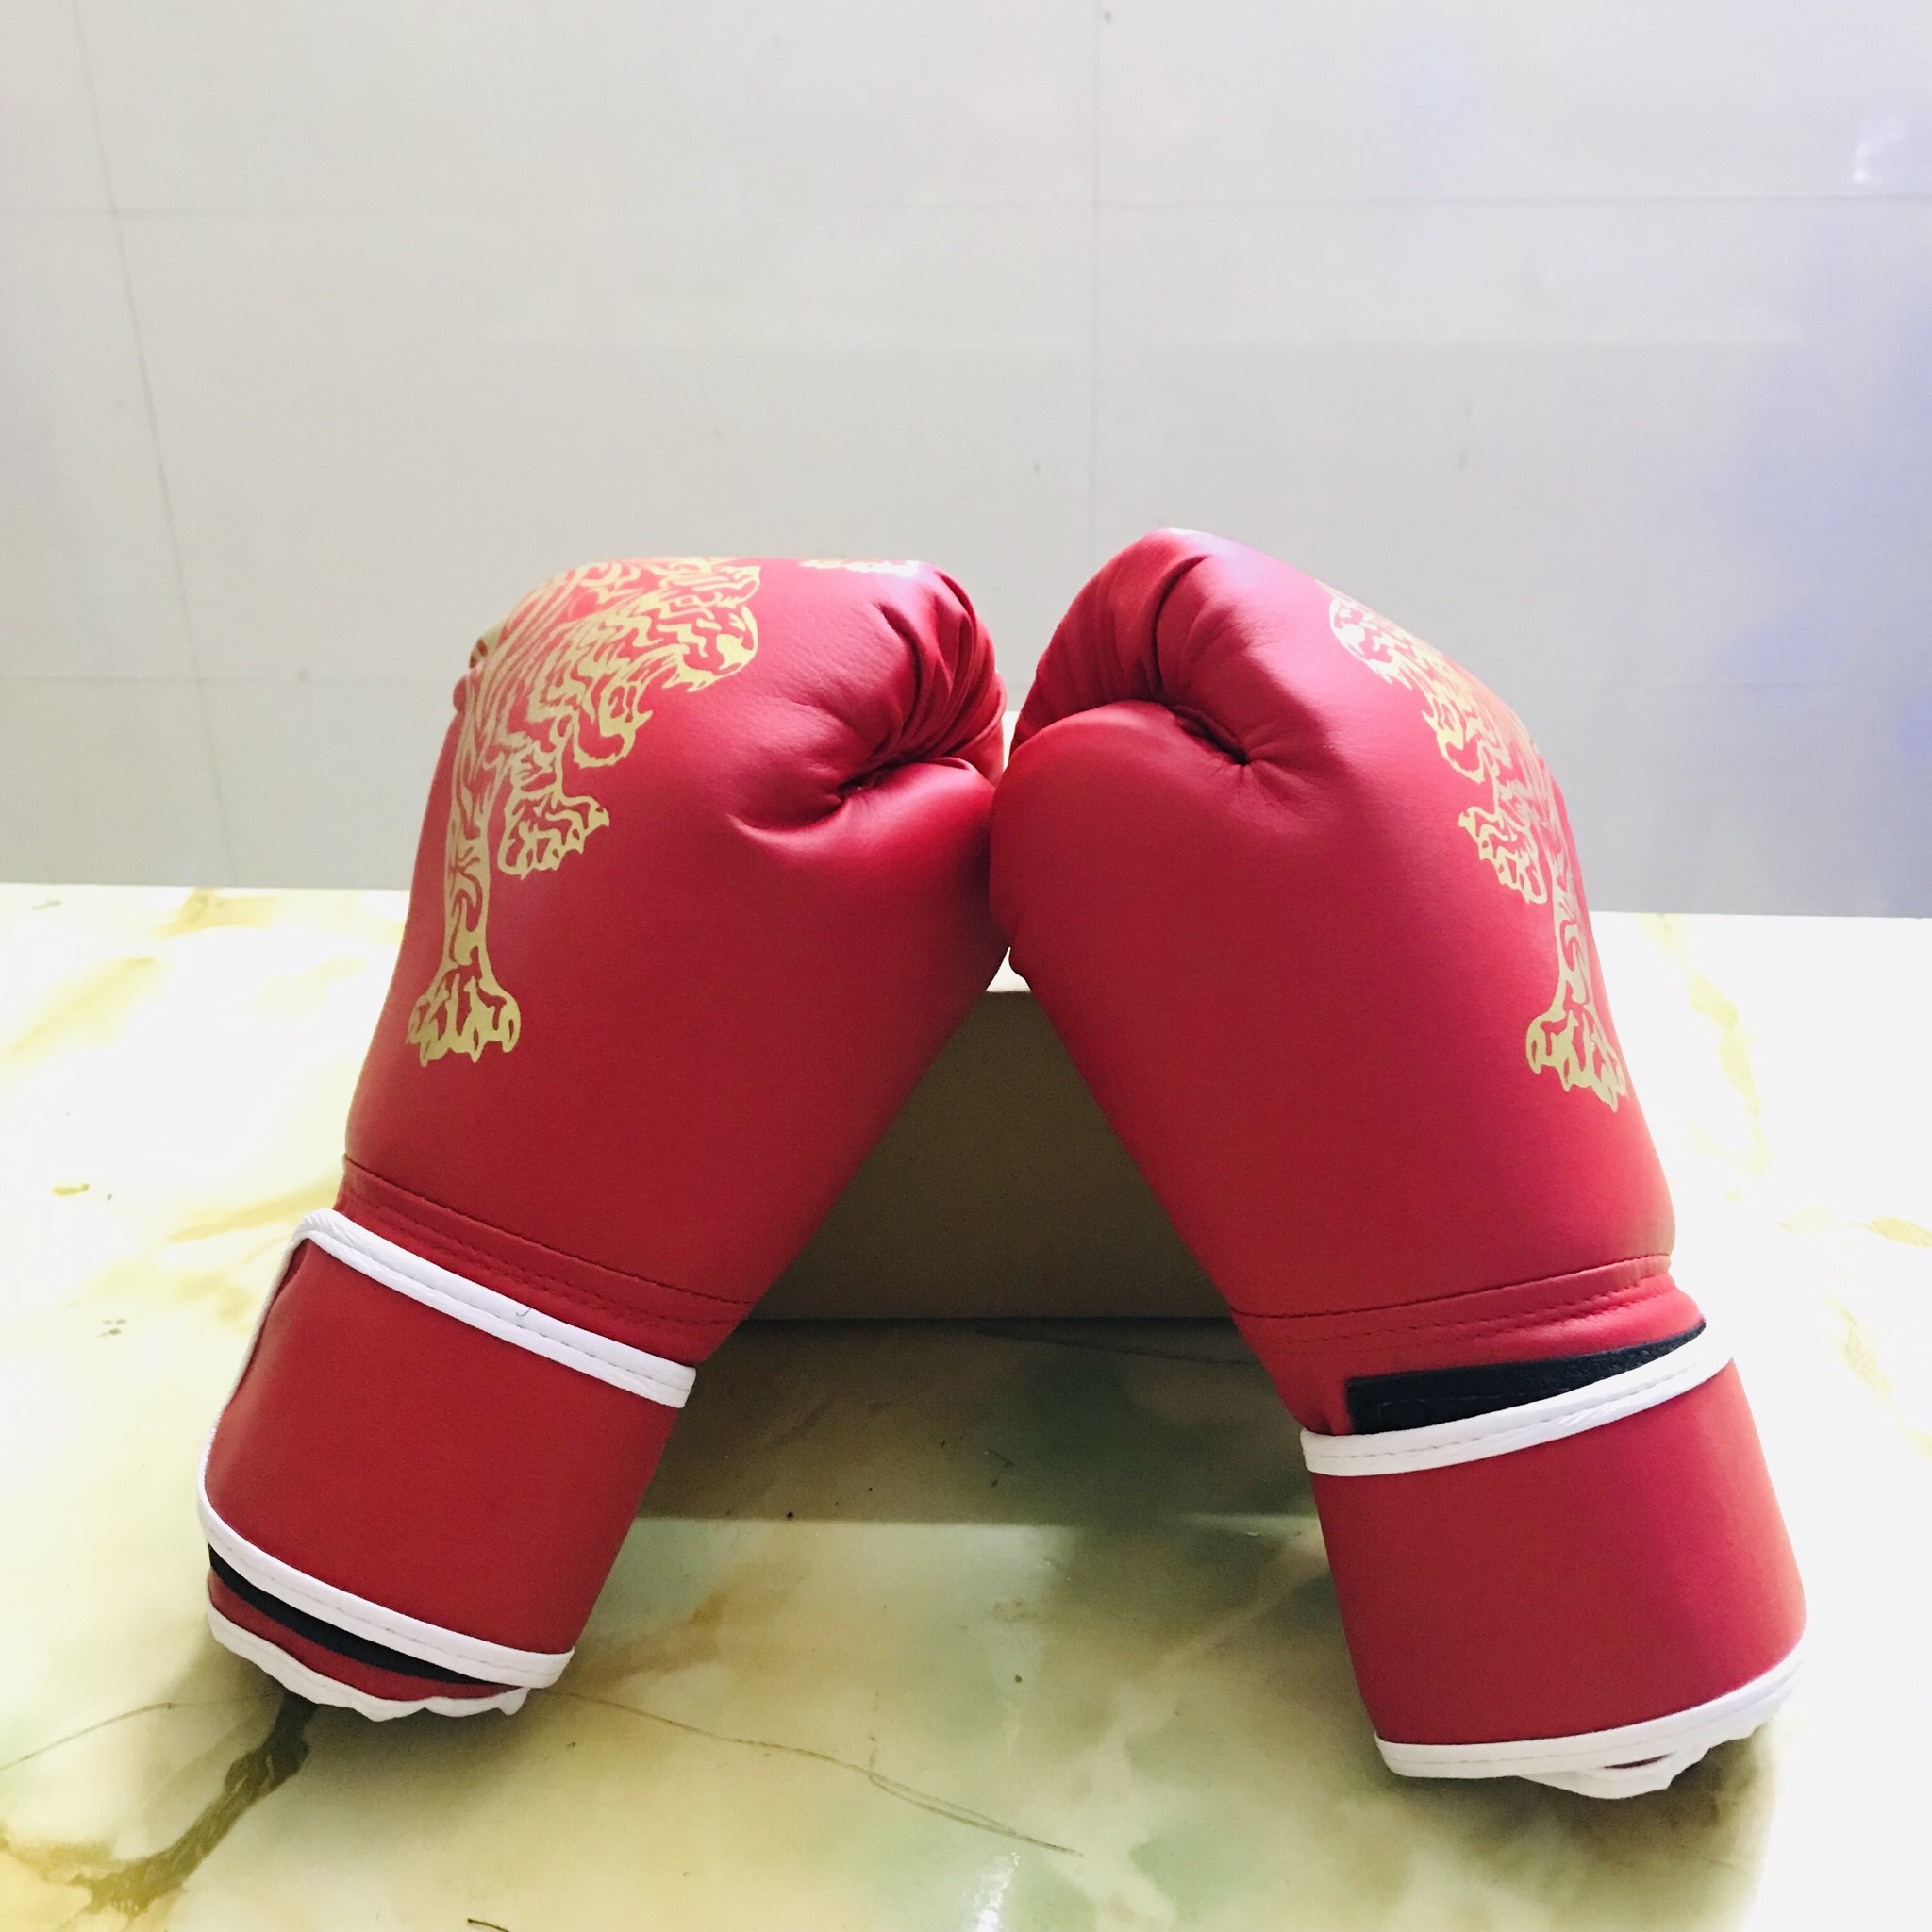 Găng Tay Boxing Người Lớn Amalife – Găng Tay Đấm Bốc Người Lớn Chính Hãng